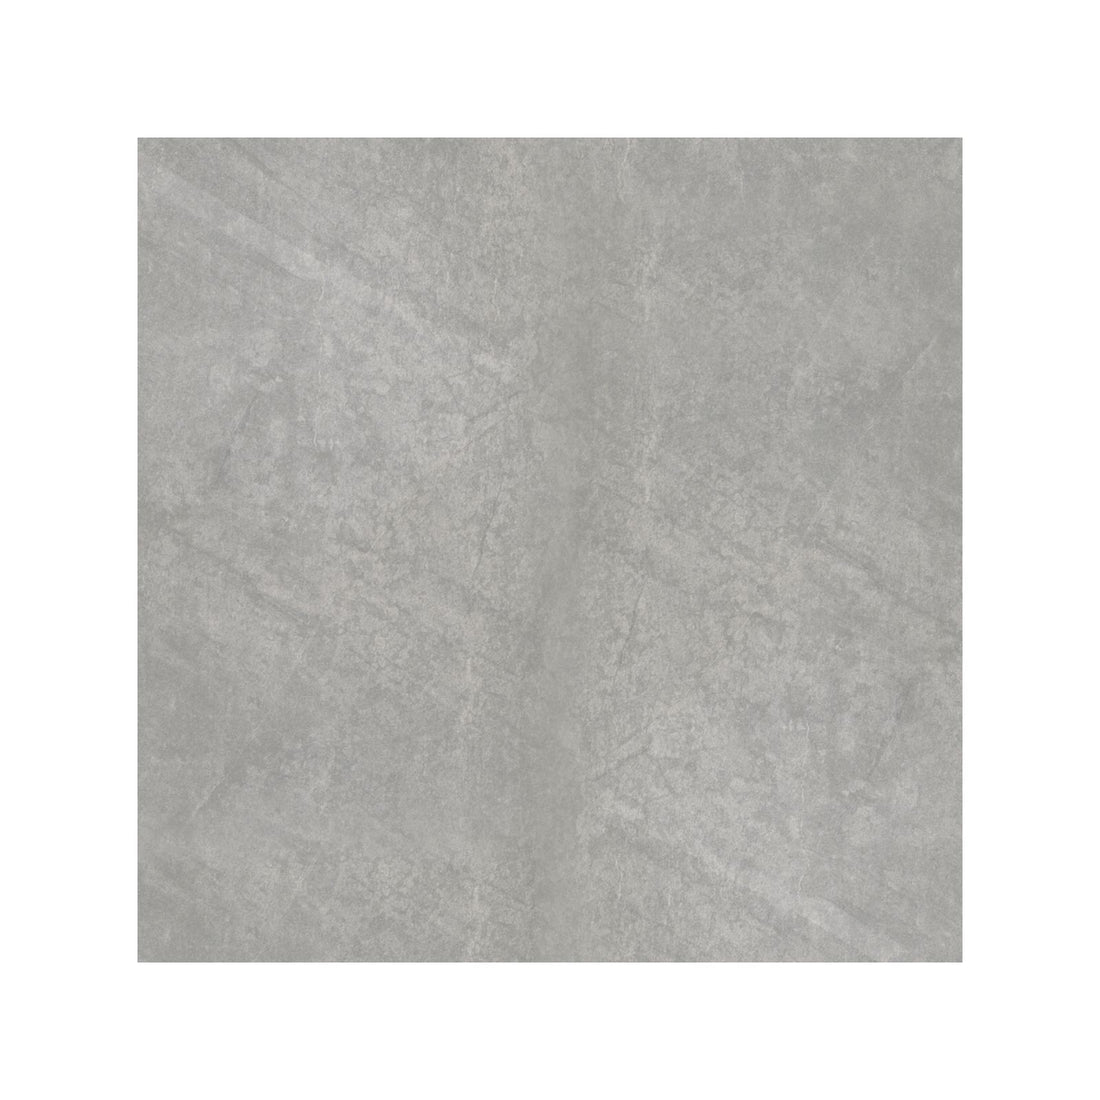 Cosmopol Grey Floor Tile - 45 x 45cm